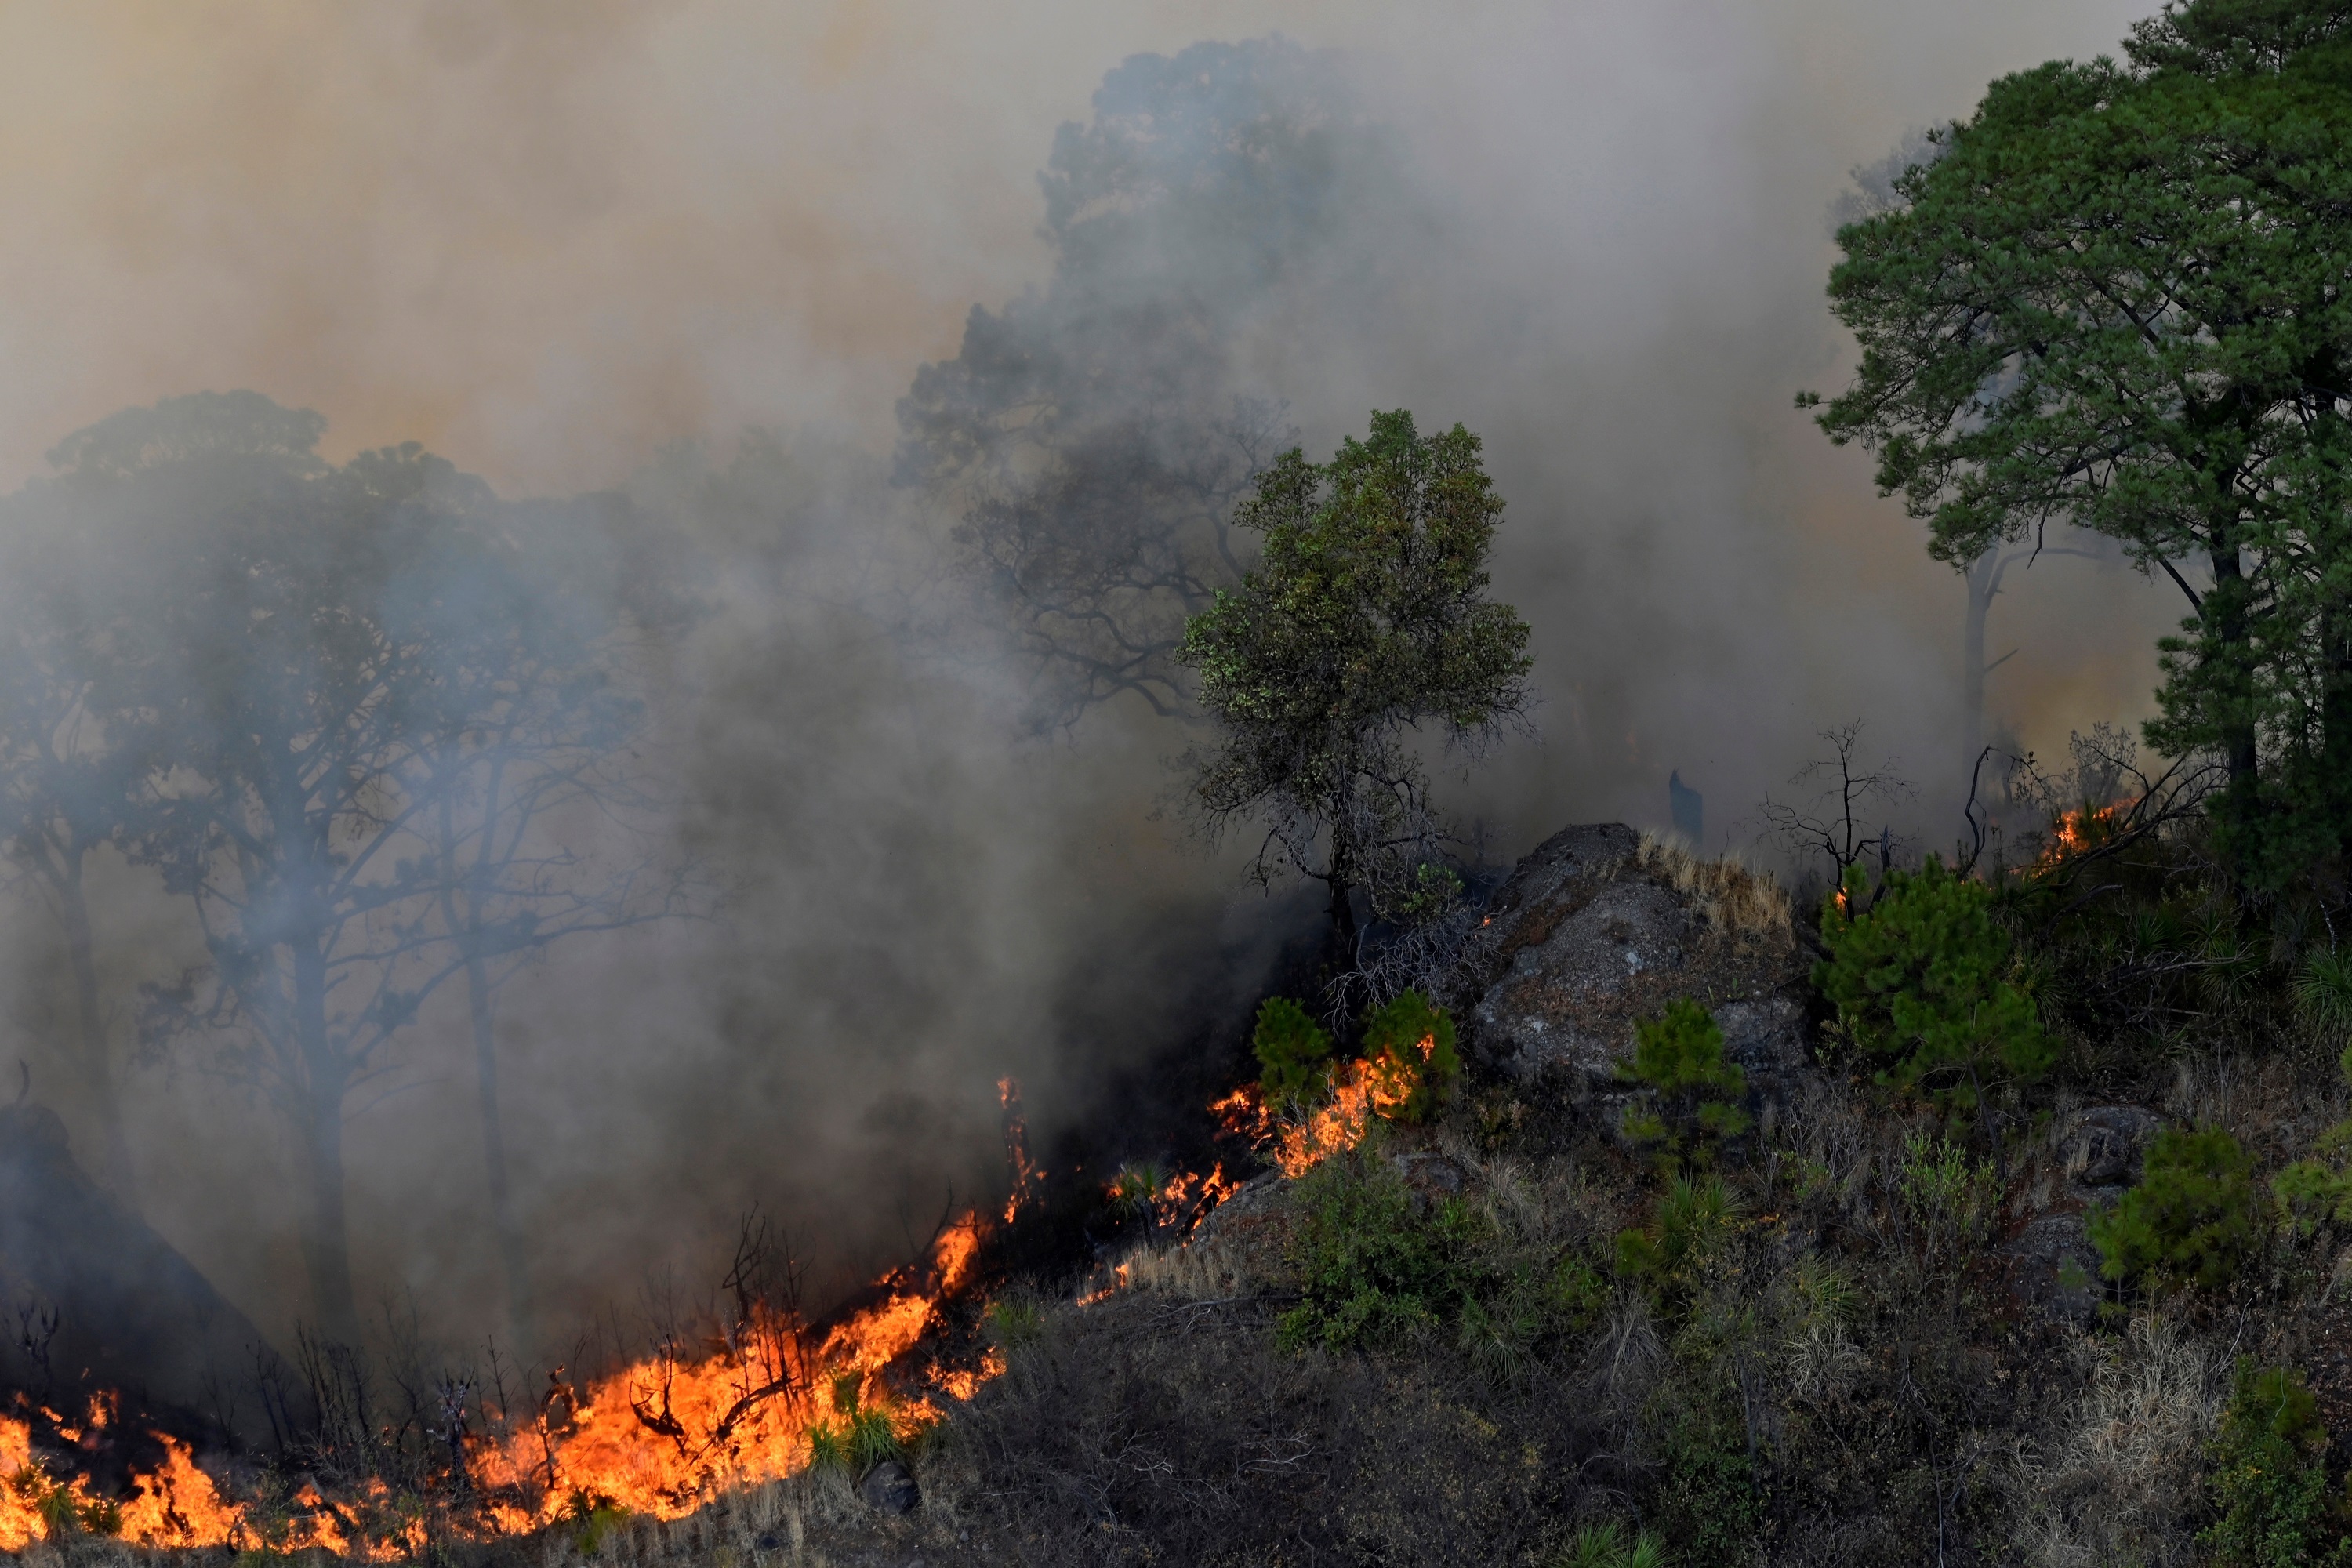 La Comisión Nacional Forestal precisó que de los 73 incendios forestales activos, que son atendidos por 3,895 combatientes, 22 incendios están liquidados, es decir, ya no representan un riesgo de propagación del fuego. (Foto: EFE)